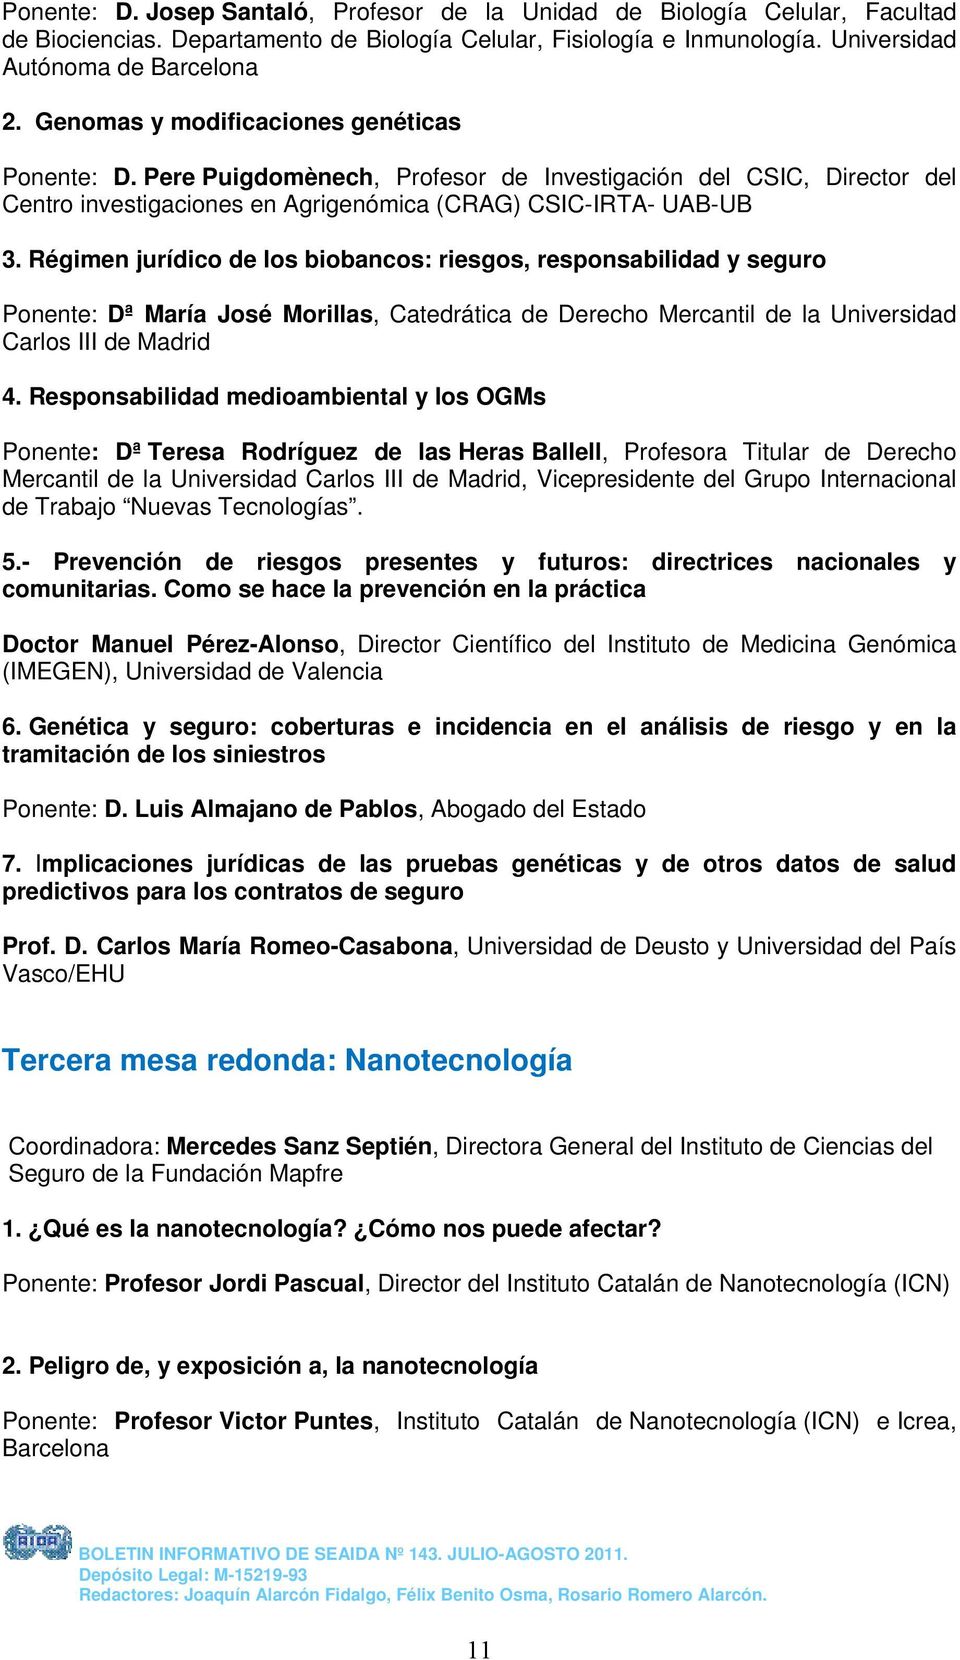 Régimen jurídico de los biobancos: riesgos, responsabilidad y seguro Ponente: Dª María José Morillas, Catedrática de Derecho Mercantil de la Universidad Carlos III de Madrid 4.